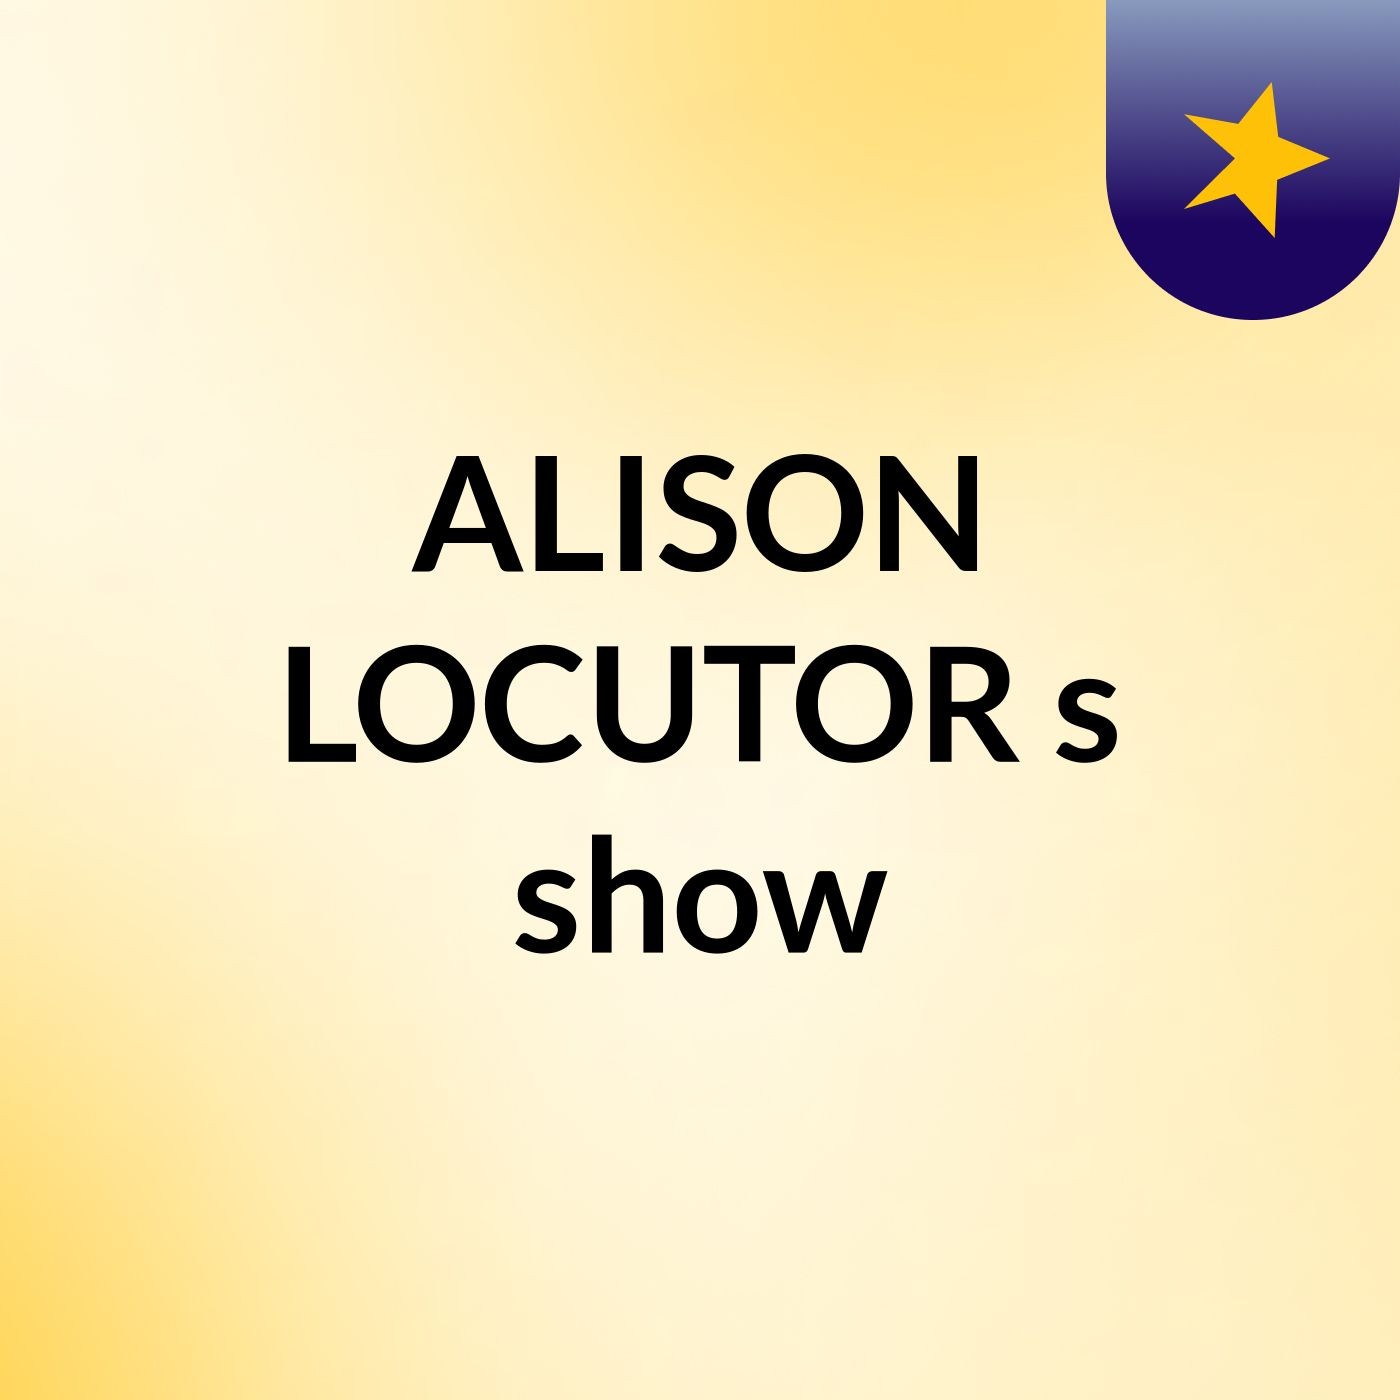 ALISON LOCUTOR's show